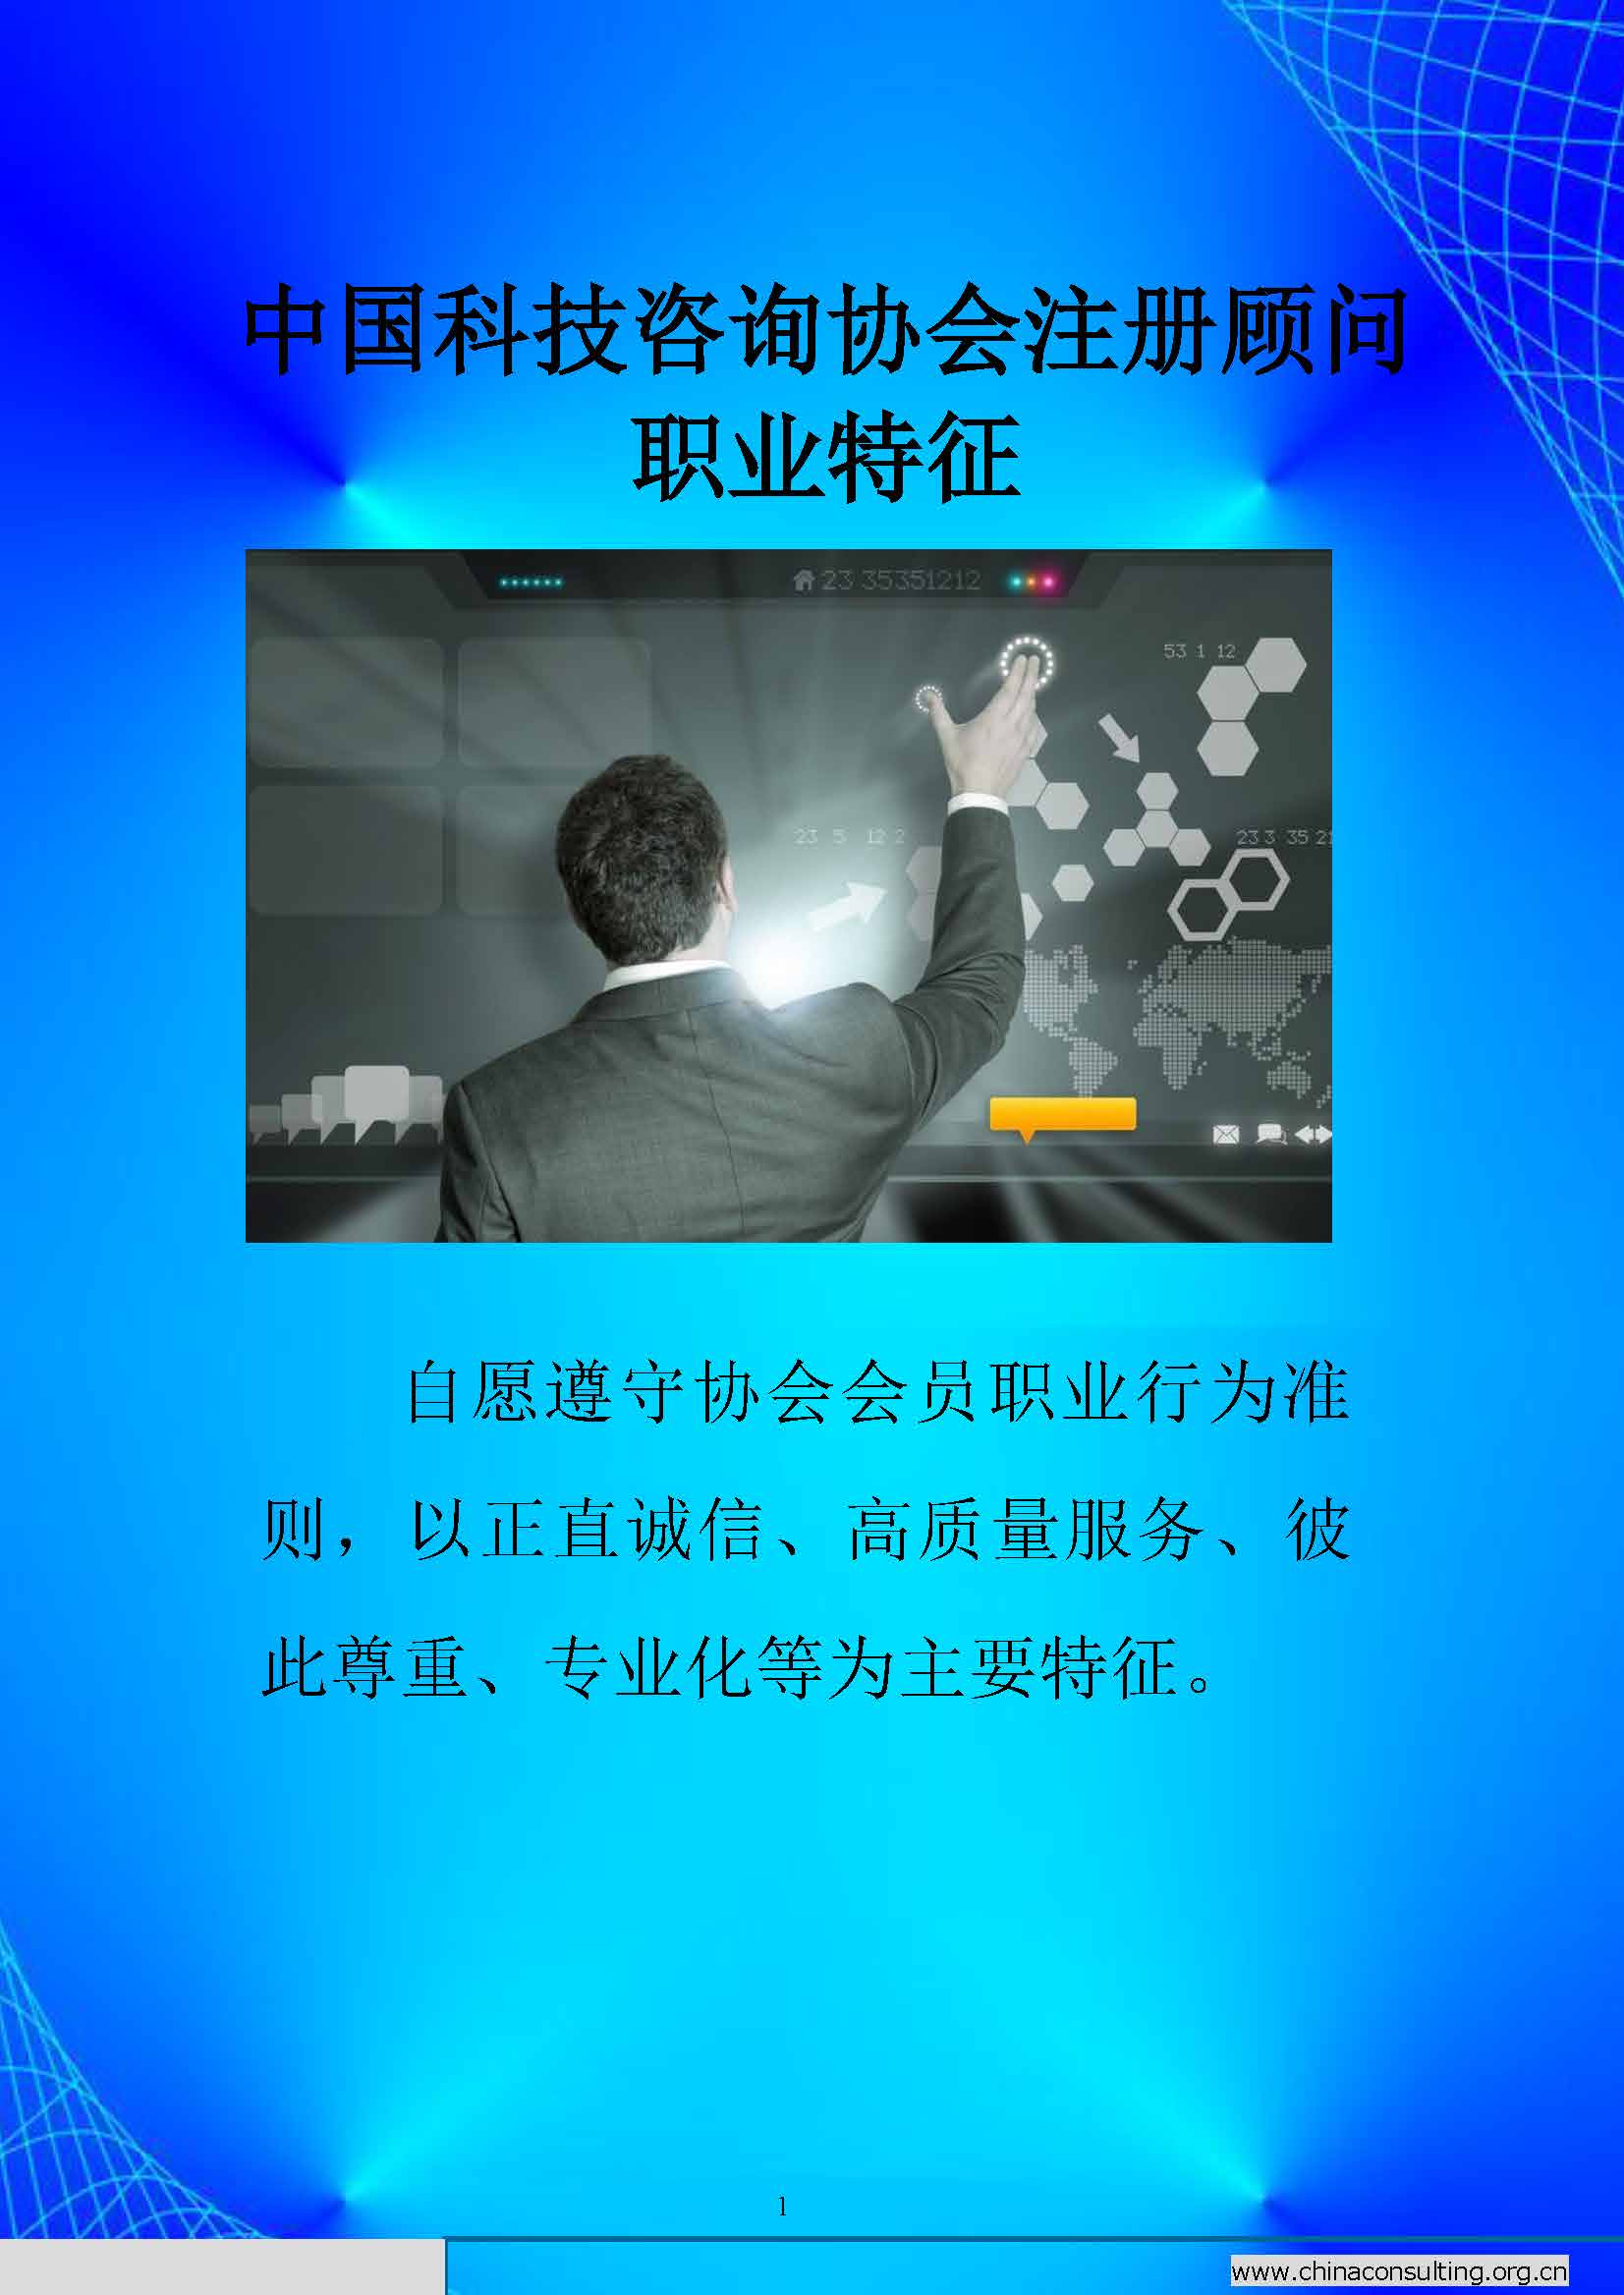 14中国科技咨询协会国际快讯（第十四期）_页面_03.jpg